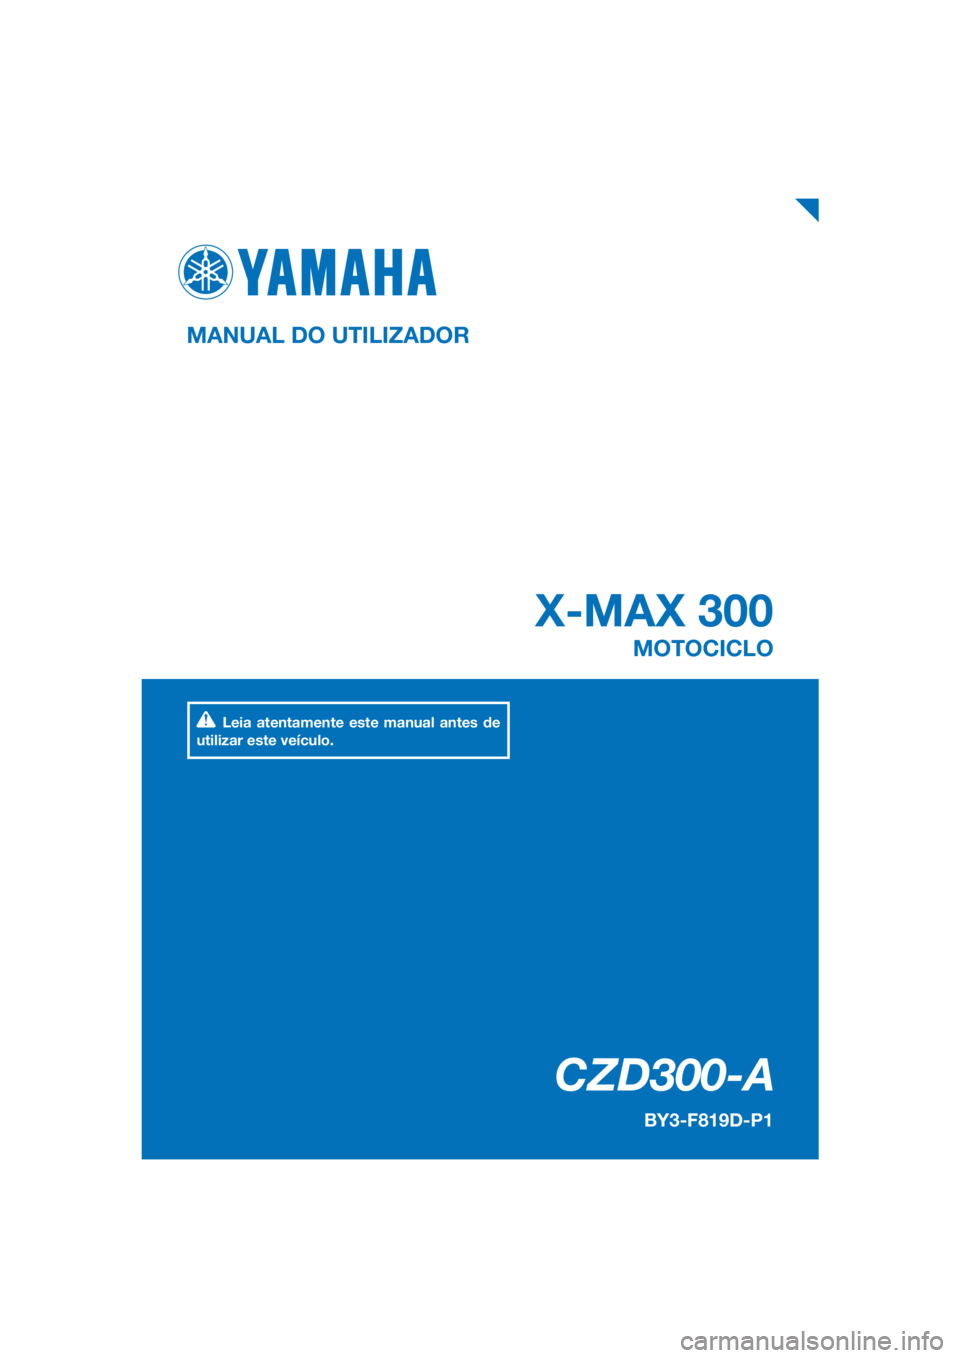 YAMAHA XMAX 300 2018  Manual de utilização (in Portuguese) PANTONE285C
CZD300-A
X-MAX 300
MANUAL DO UTILIZADOR
BY3-F819D-P1
MOTOCICLO
Leia atentamente este manual antes de 
utilizar este veículo.
[Portuguese  (P)] 